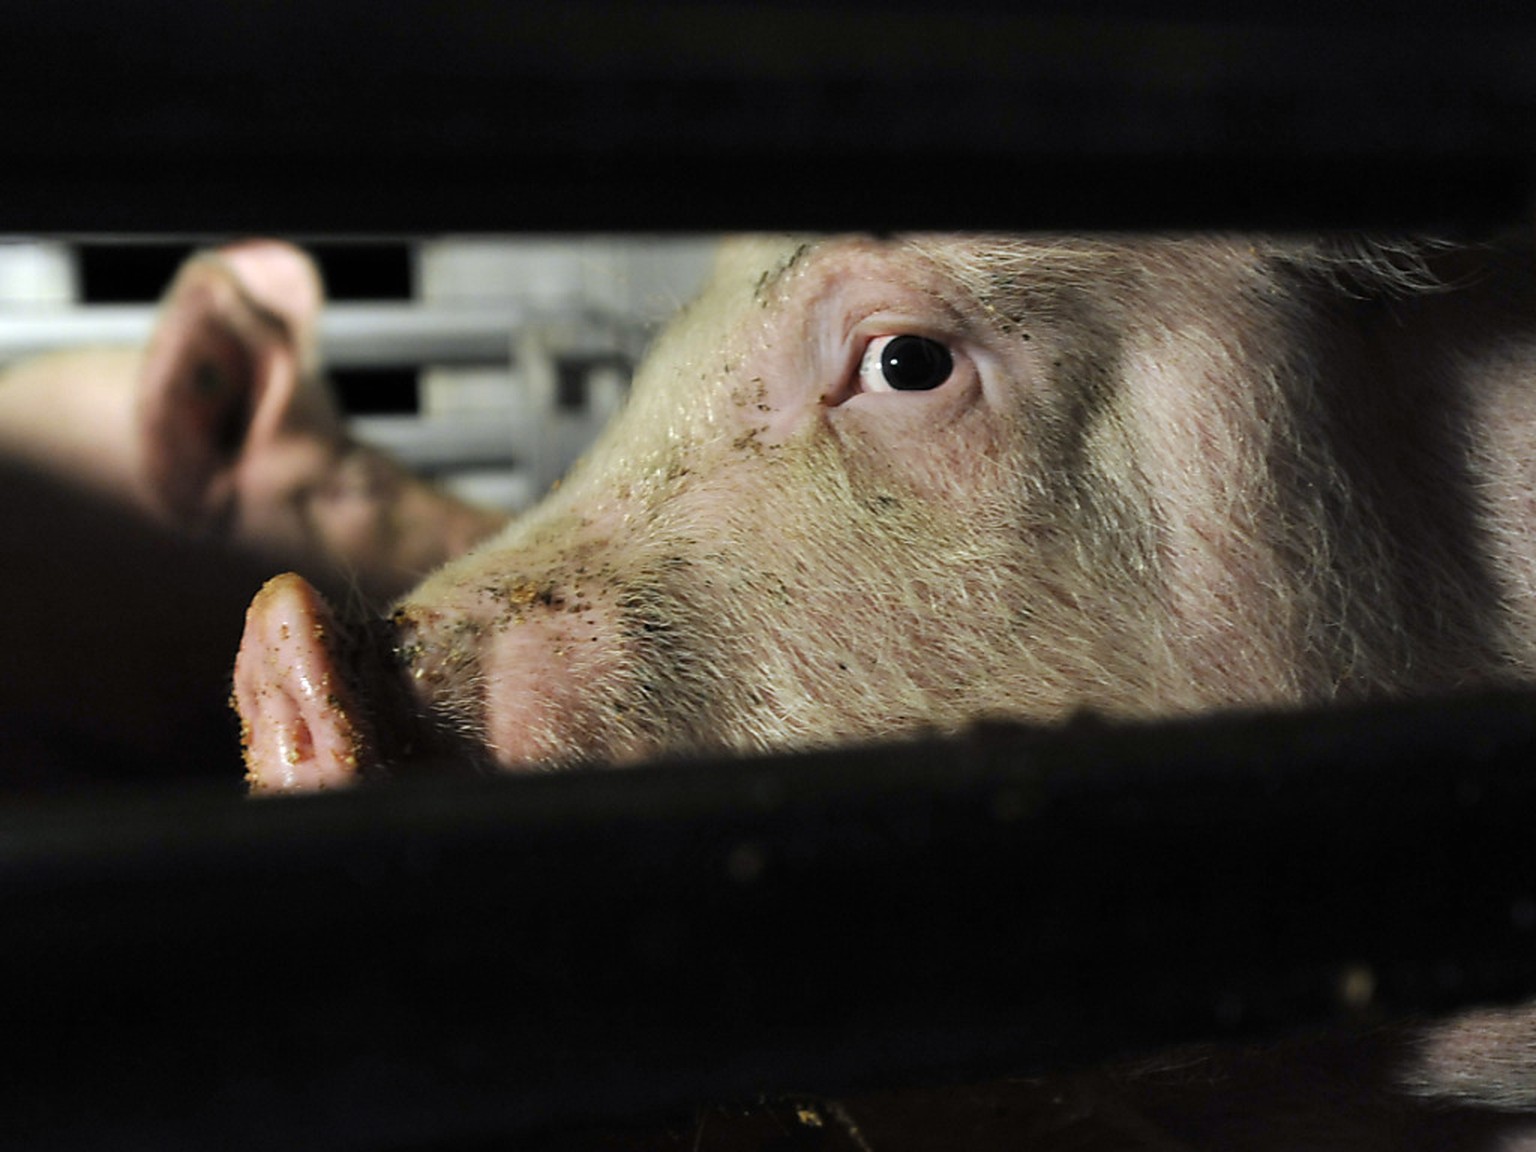 Schweine auf dem Weg in den Schlachthof. Dort werden die Vorschriften zum Tierwohl nicht immer eingehalten, wie Kontrollen im Auftrag des Bundes gezeigt haben. (Archivbild)